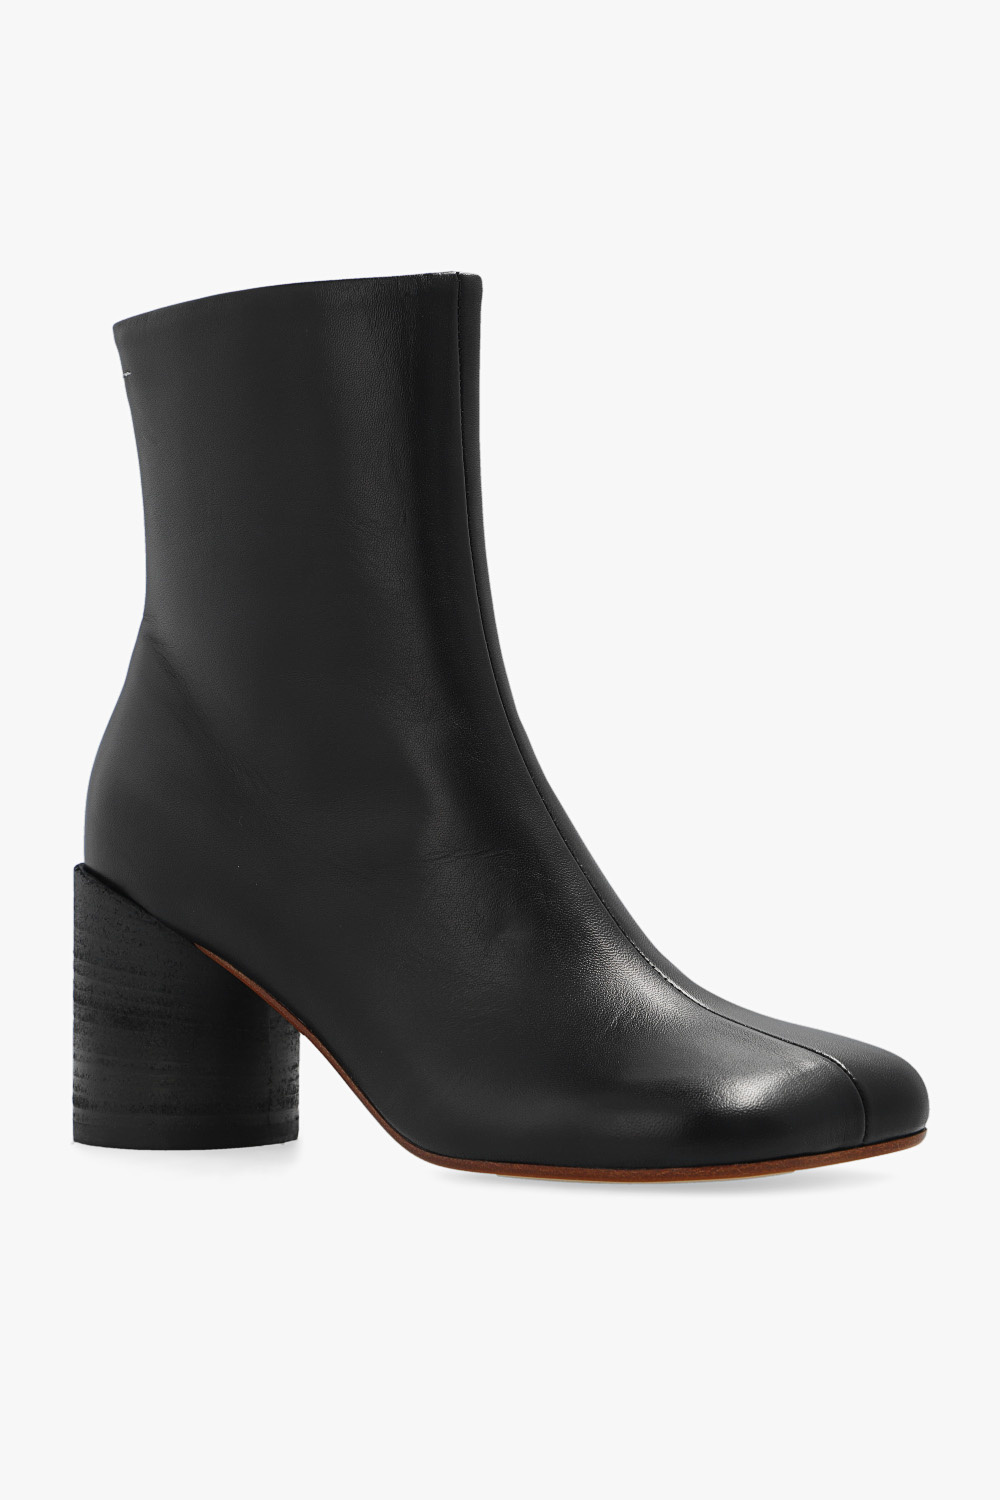 zapatillas de running Adidas 10k de material reciclado marrones ‘Tabi’ heeled ankle boots